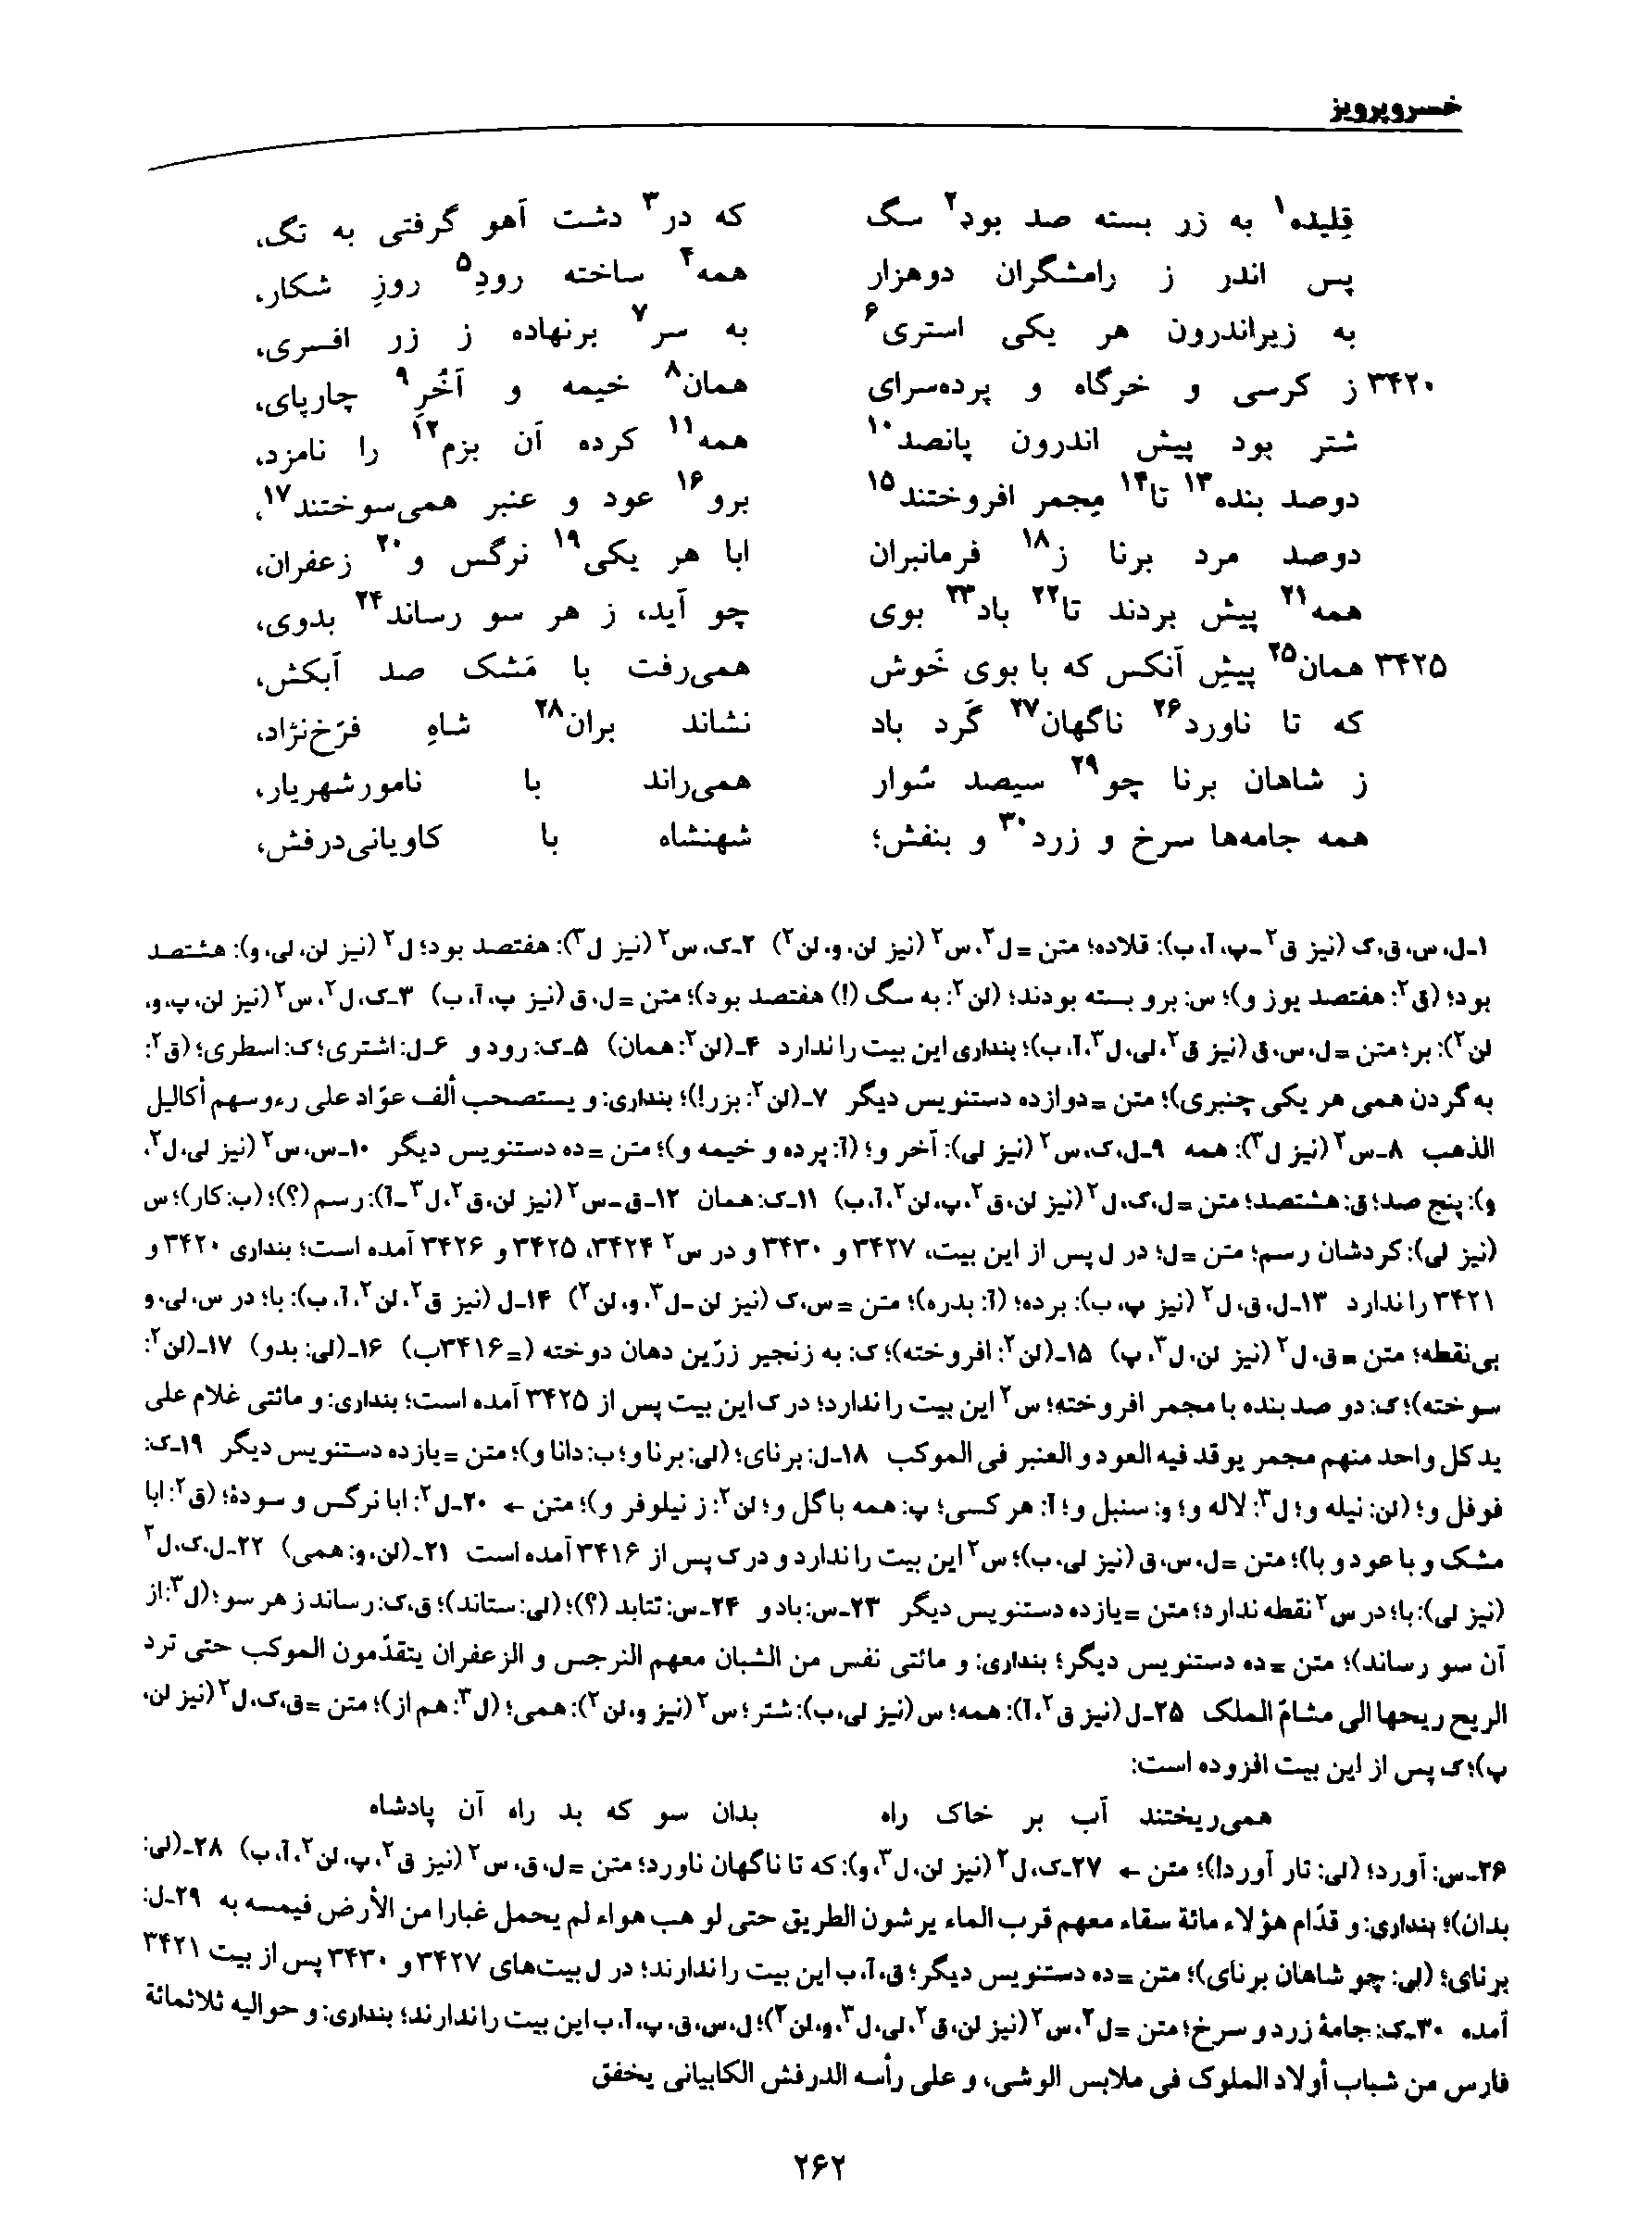 vol. 8, p. 262